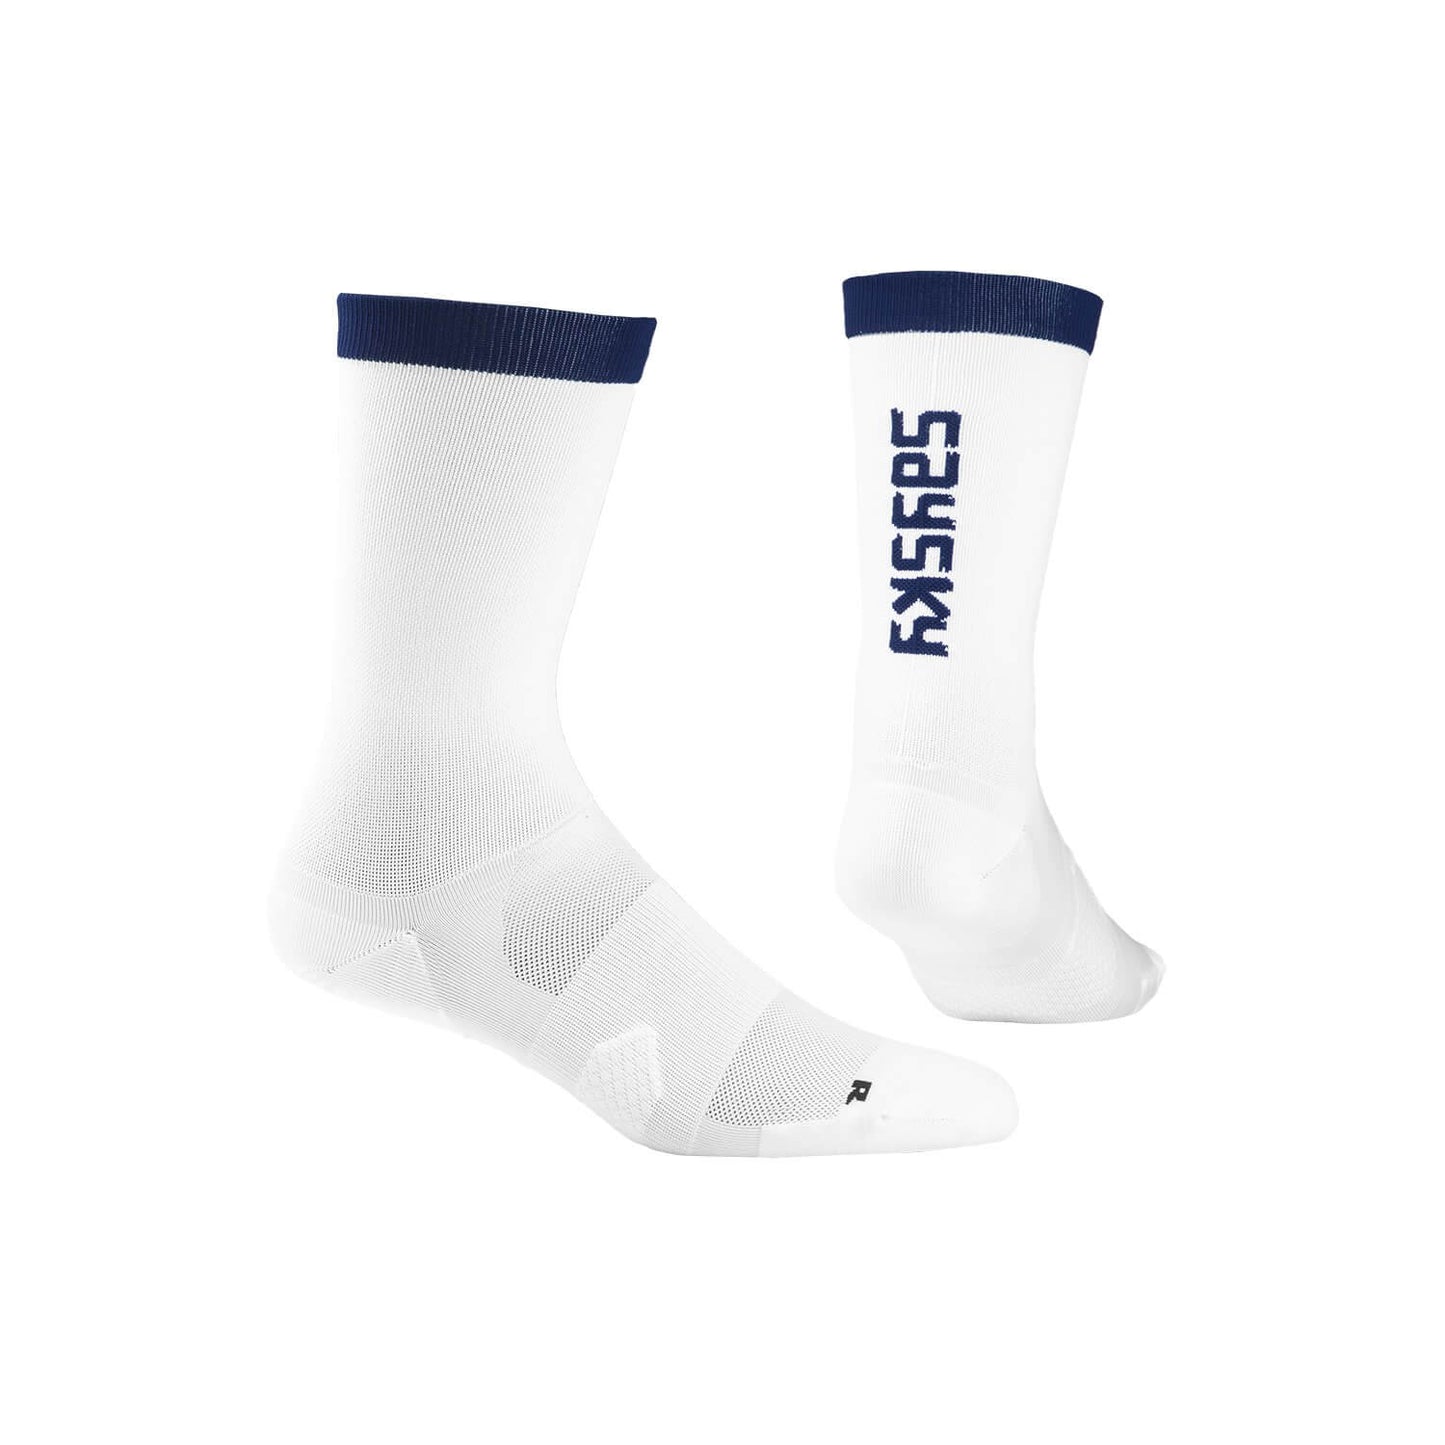 ランニングソックス FMASO04 High Combat Socks - White [ユニセックス]